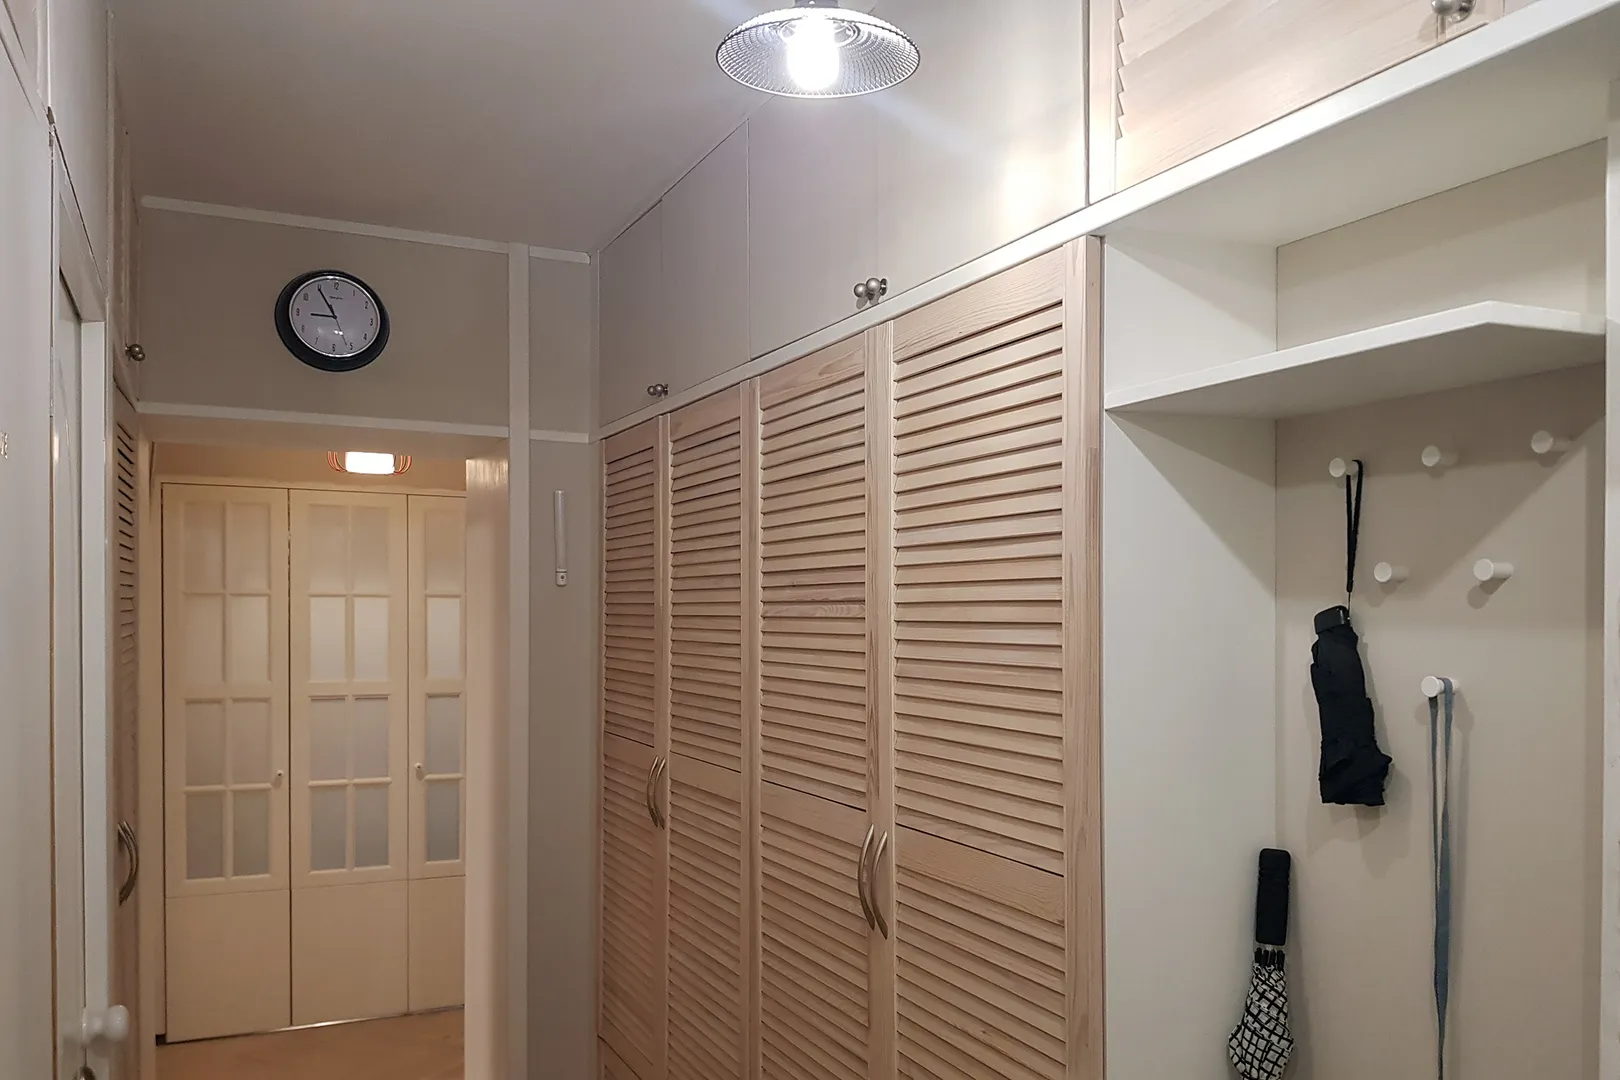 В коридоре: шкаф для верхней одежды, зонты, гладильные принадлежности, путеводители и настольные игры.